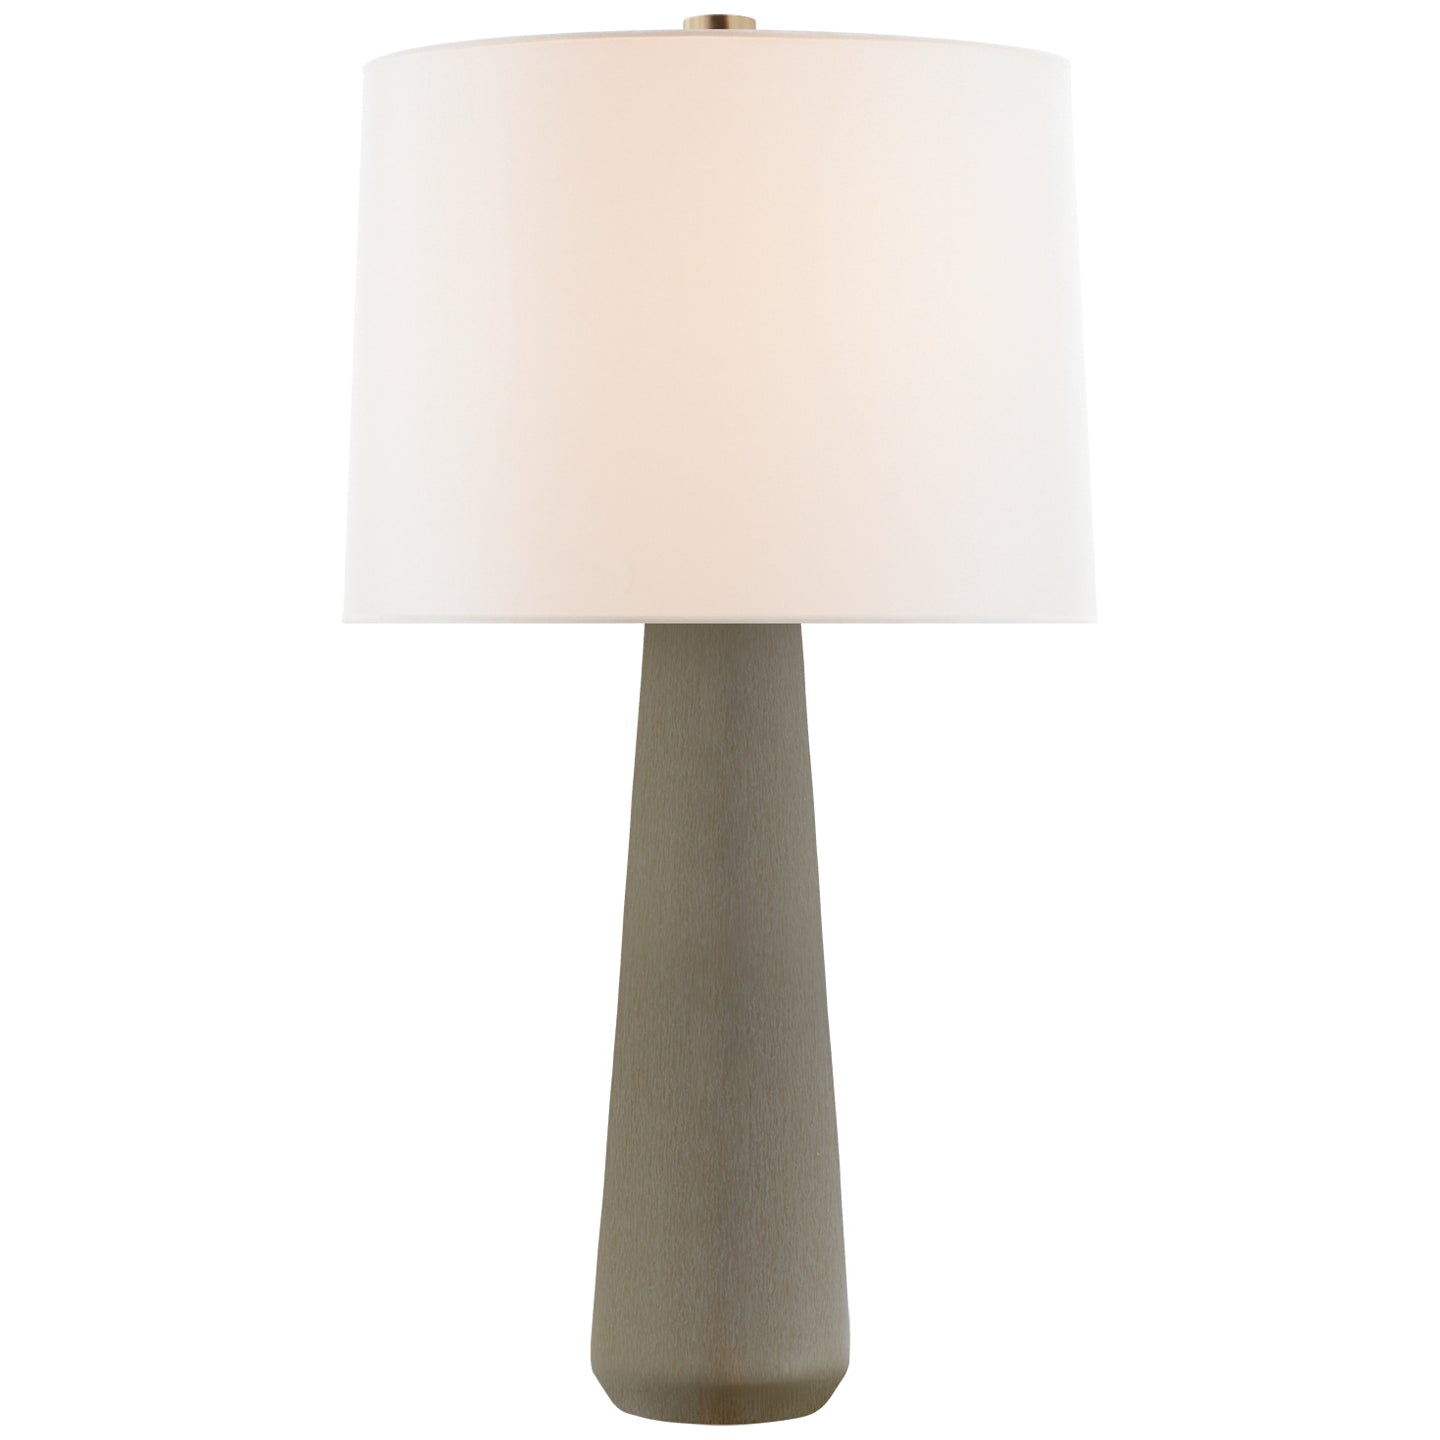 Visual Comfort Signature - BBL 3901SHG-L - One Light Table Lamp - Athens - Shellish Gray